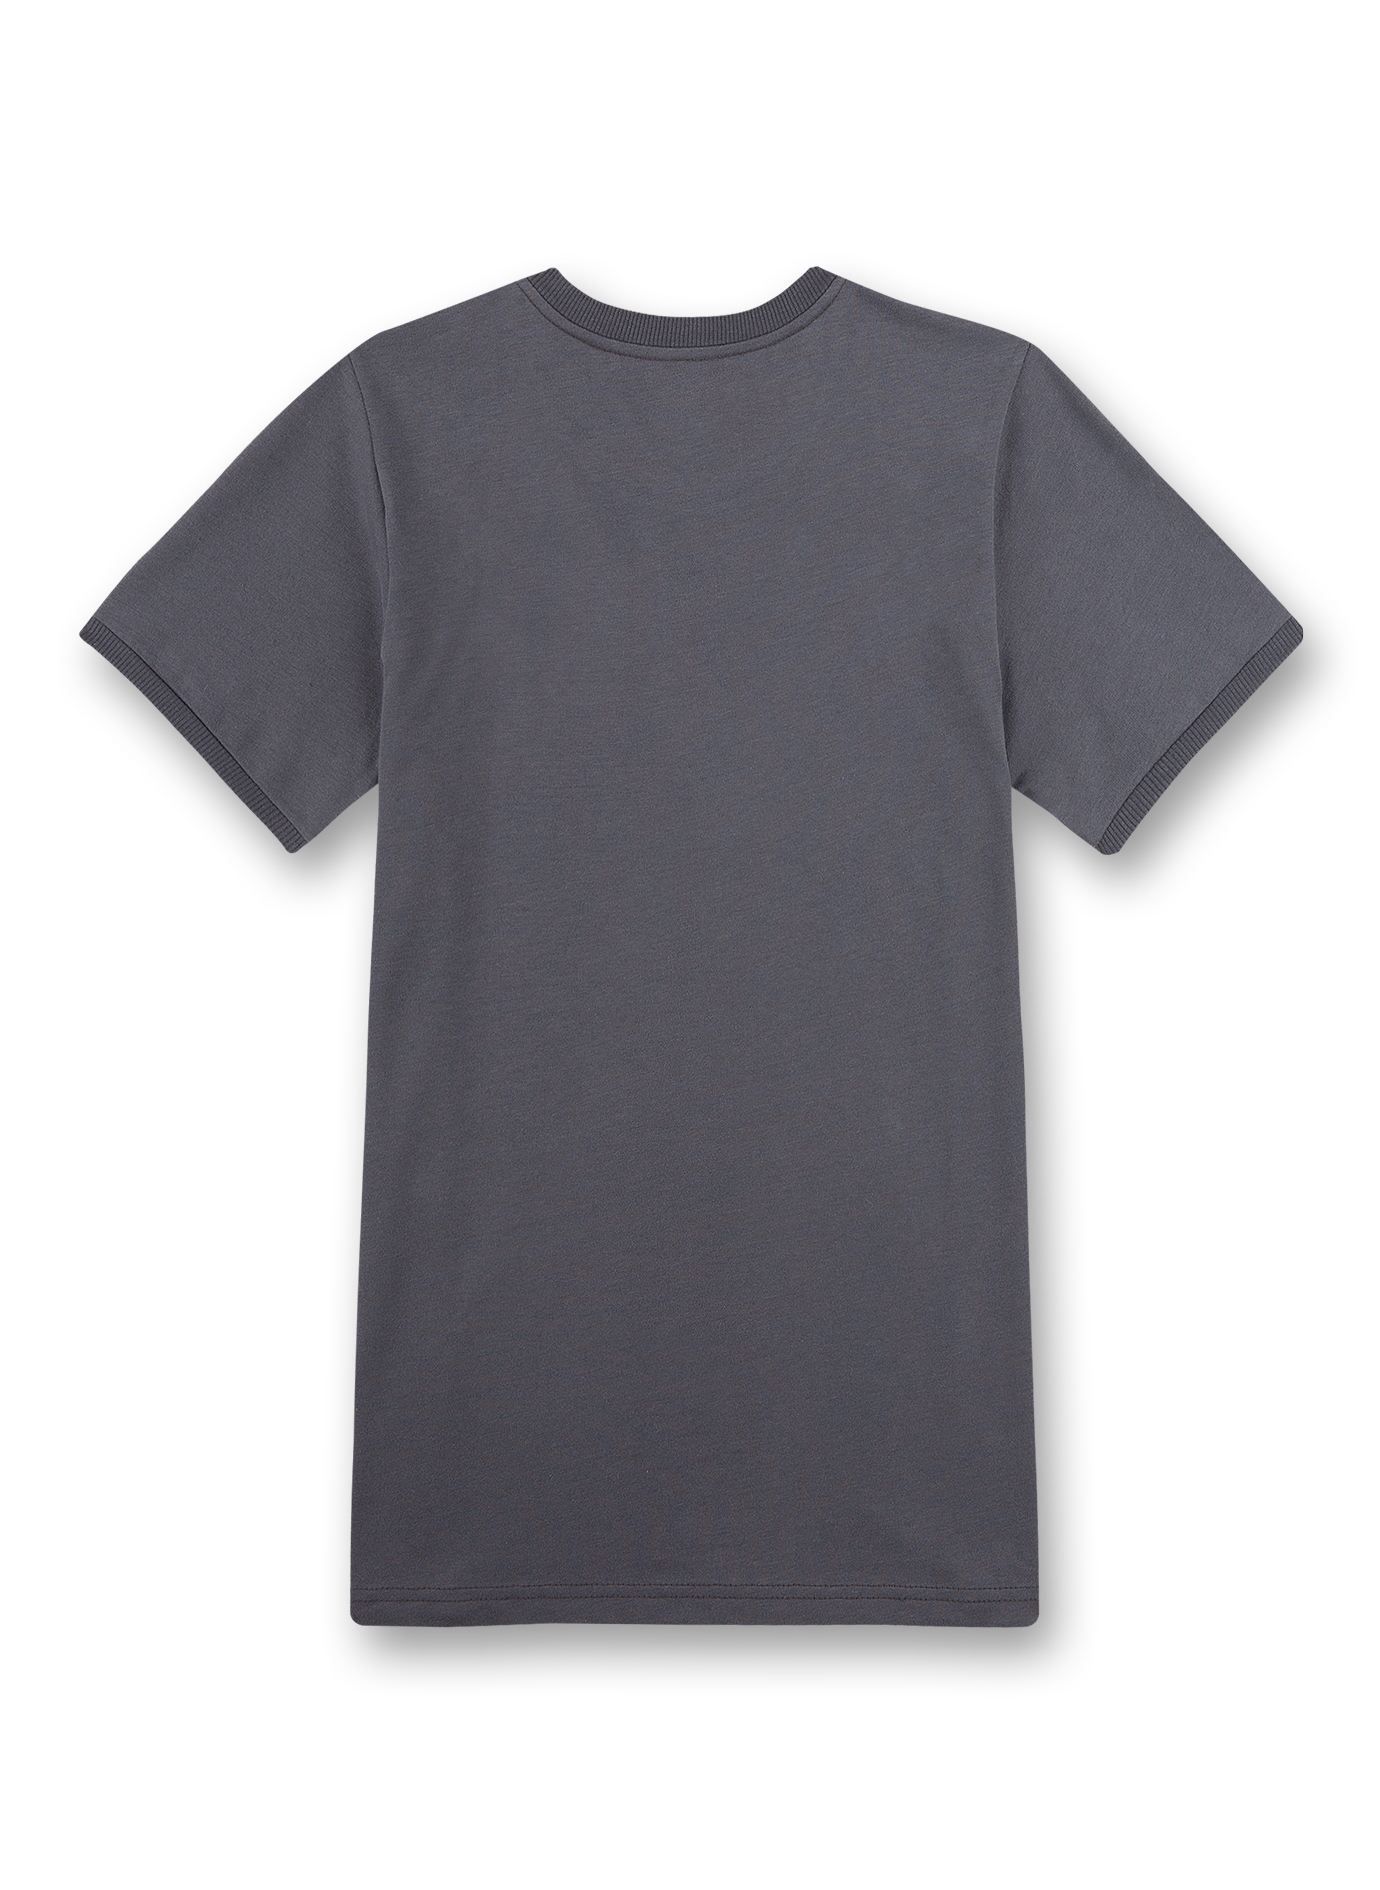 Jungen-Shirt Kurzarm Grau Gamer  